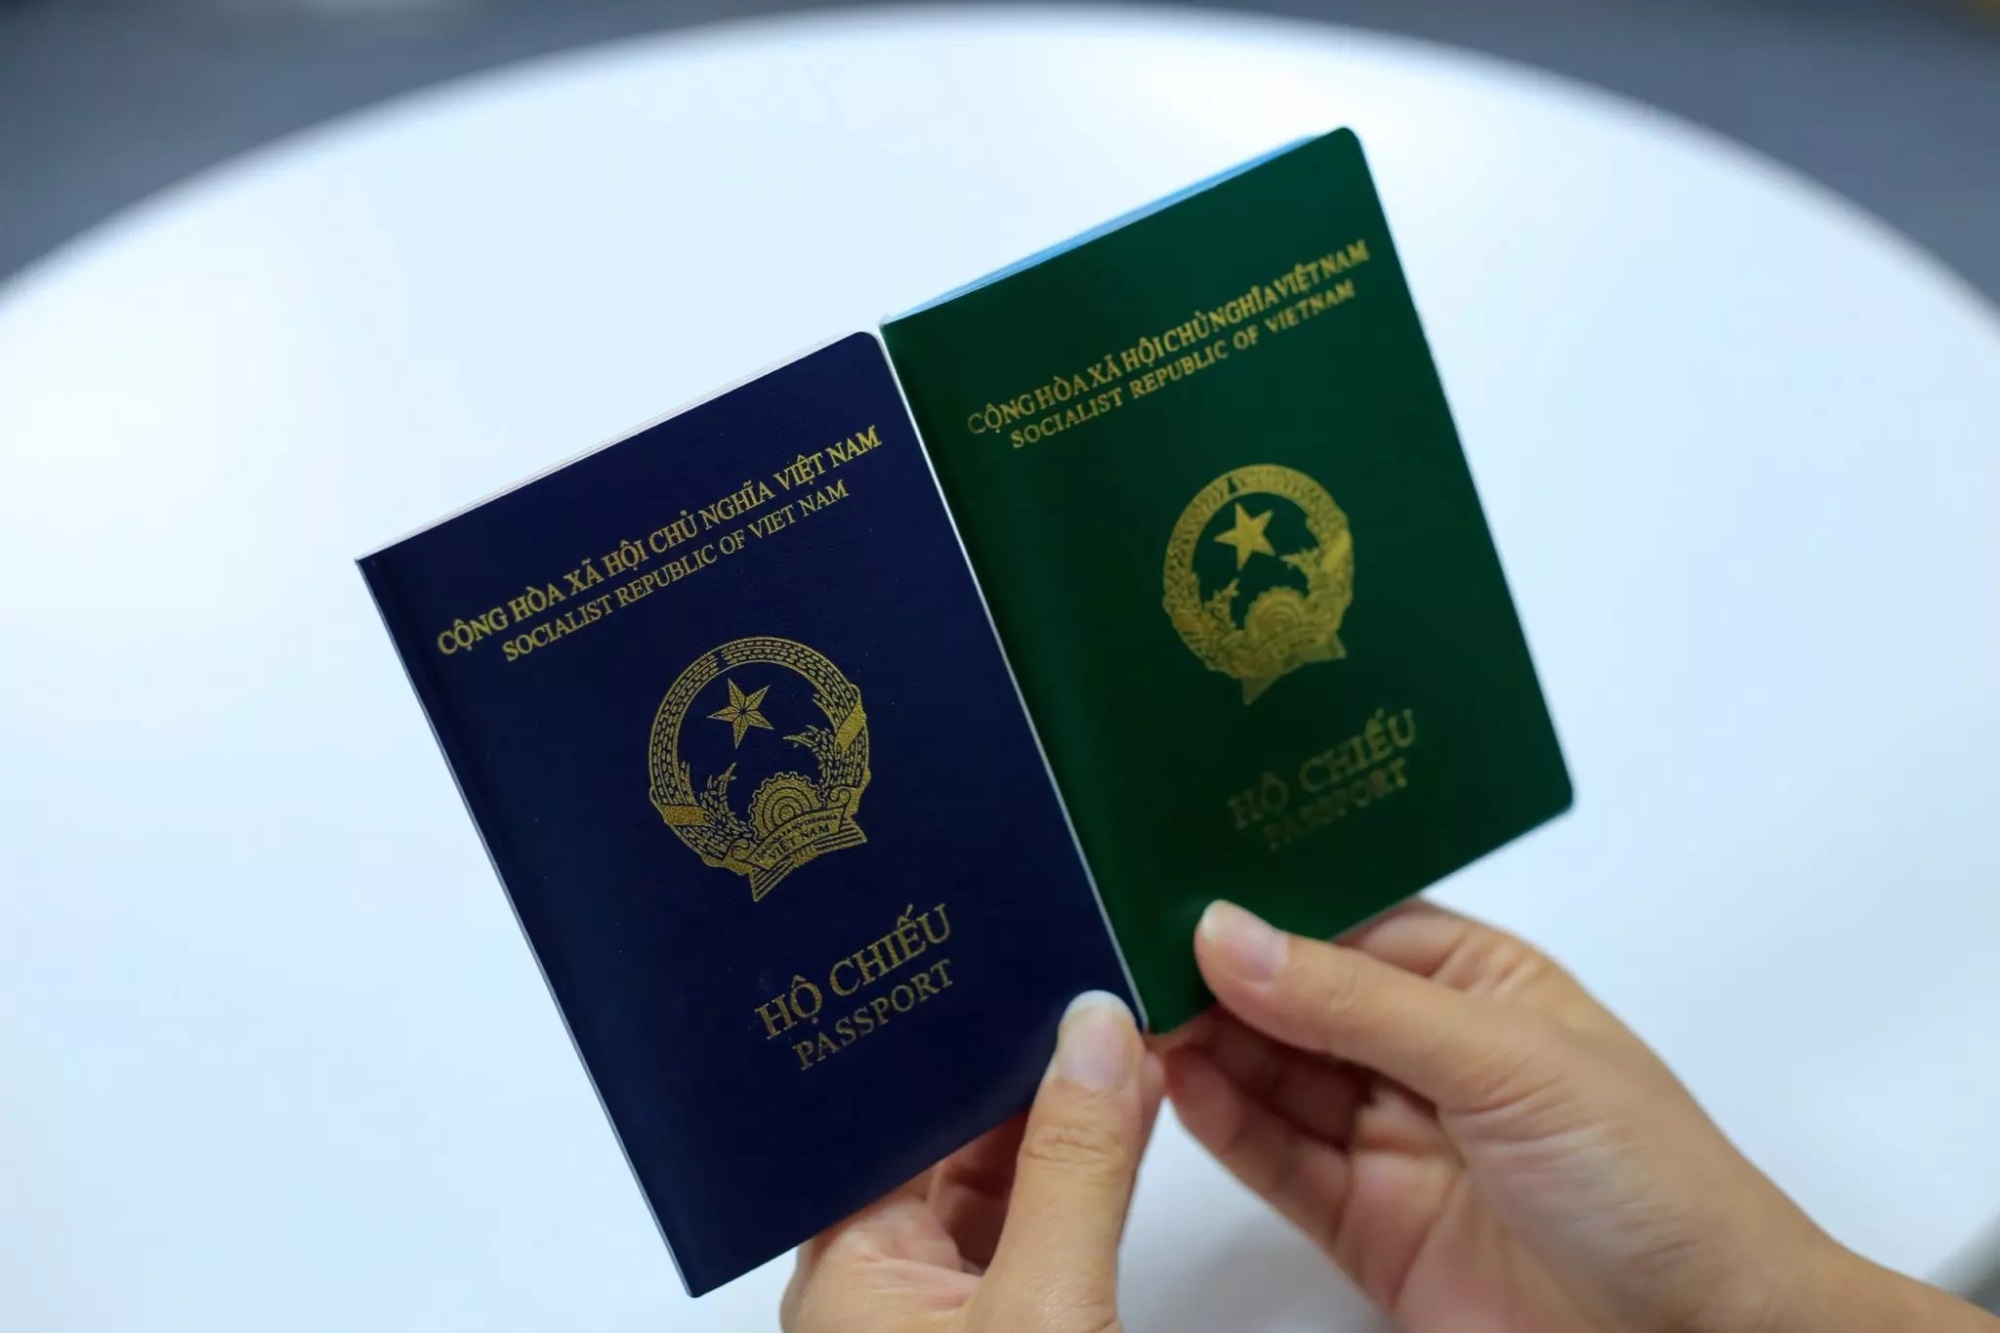 Phần Lan tạm ngưng công nhận hộ chiếu mẫu mới của Việt Nam - Ảnh 1